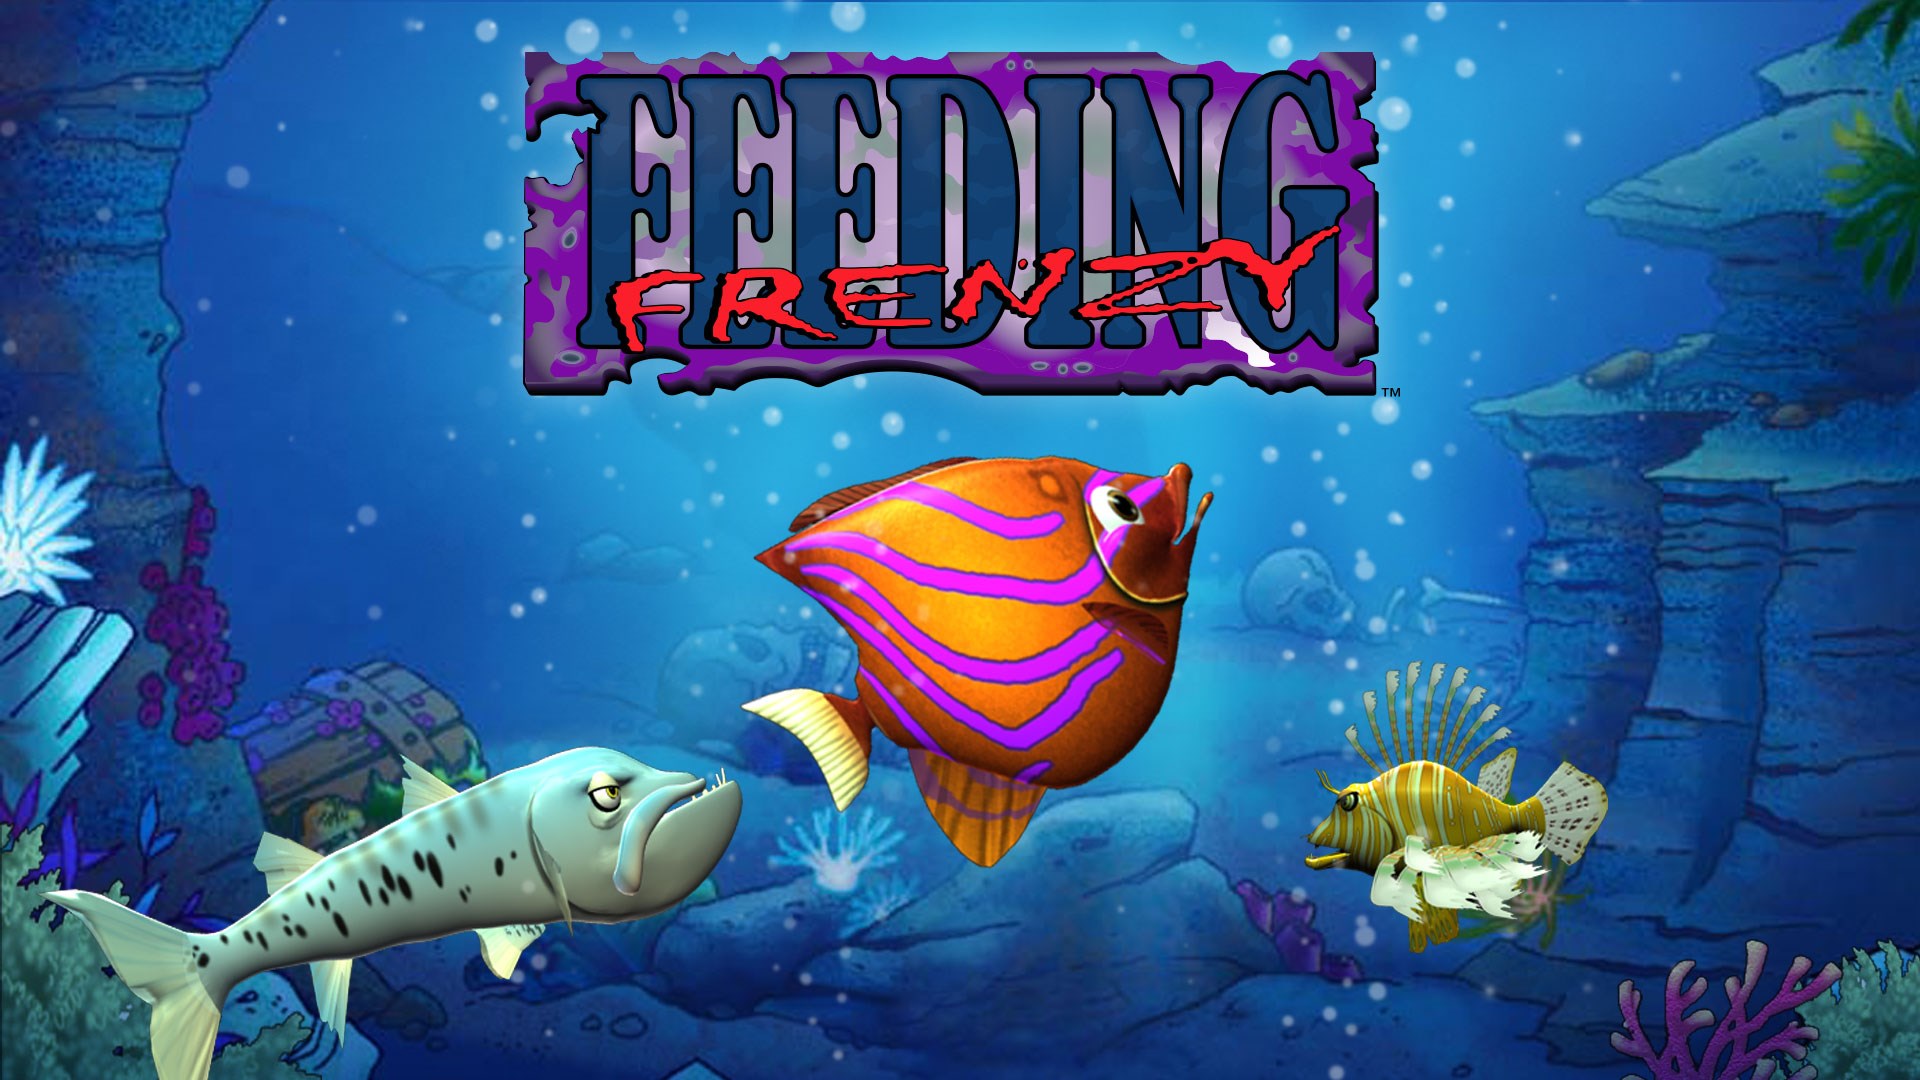 Feeding frenzy download windows 10 quicken software 2013 free download